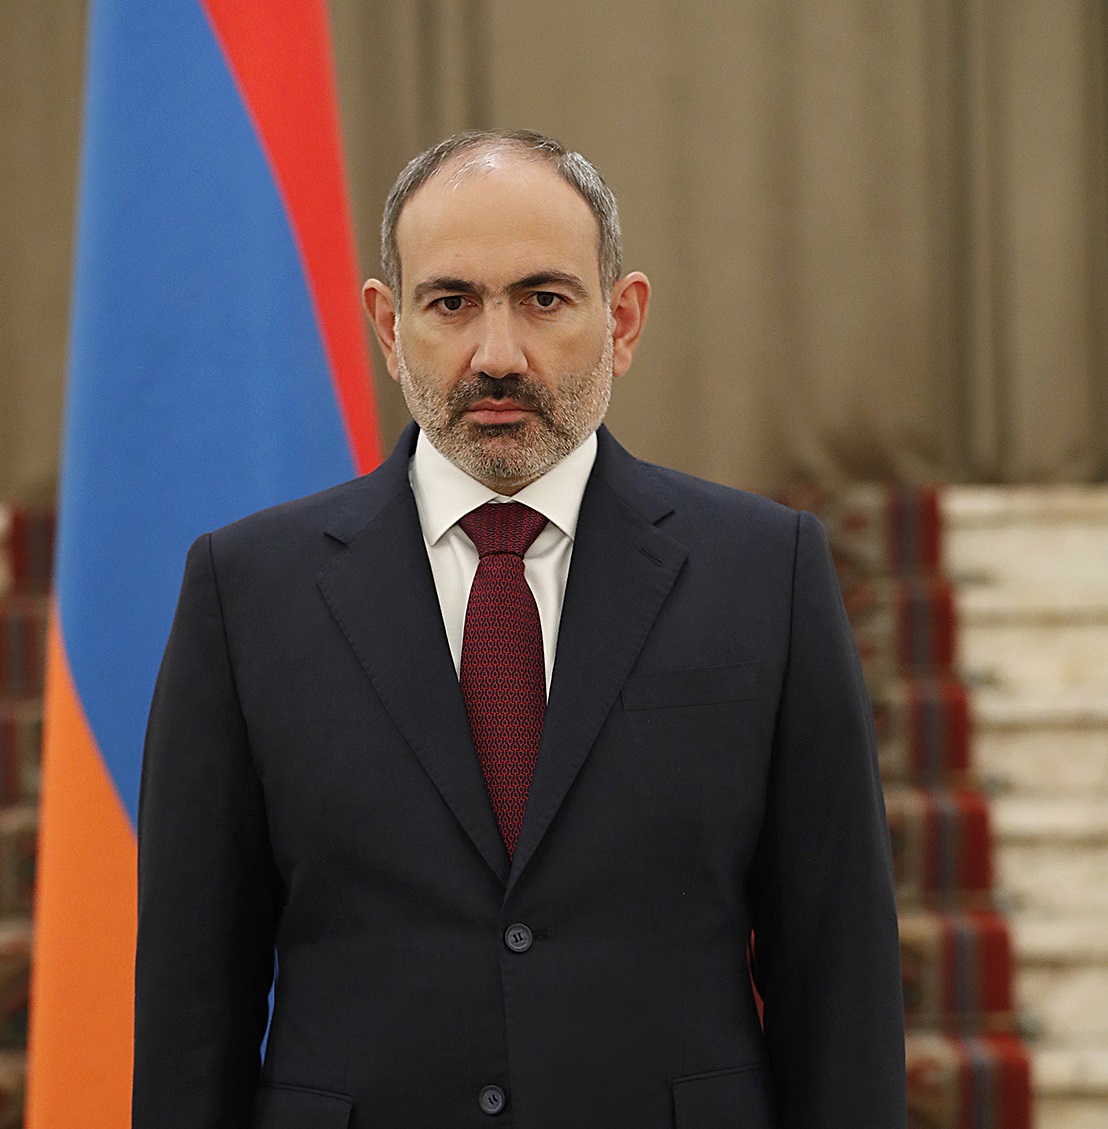 Կիսում ենք ձեր ցավը. վարչապետի ուղերձը Հայաստանի եզդի համայնքի ներկայացուցիչներին